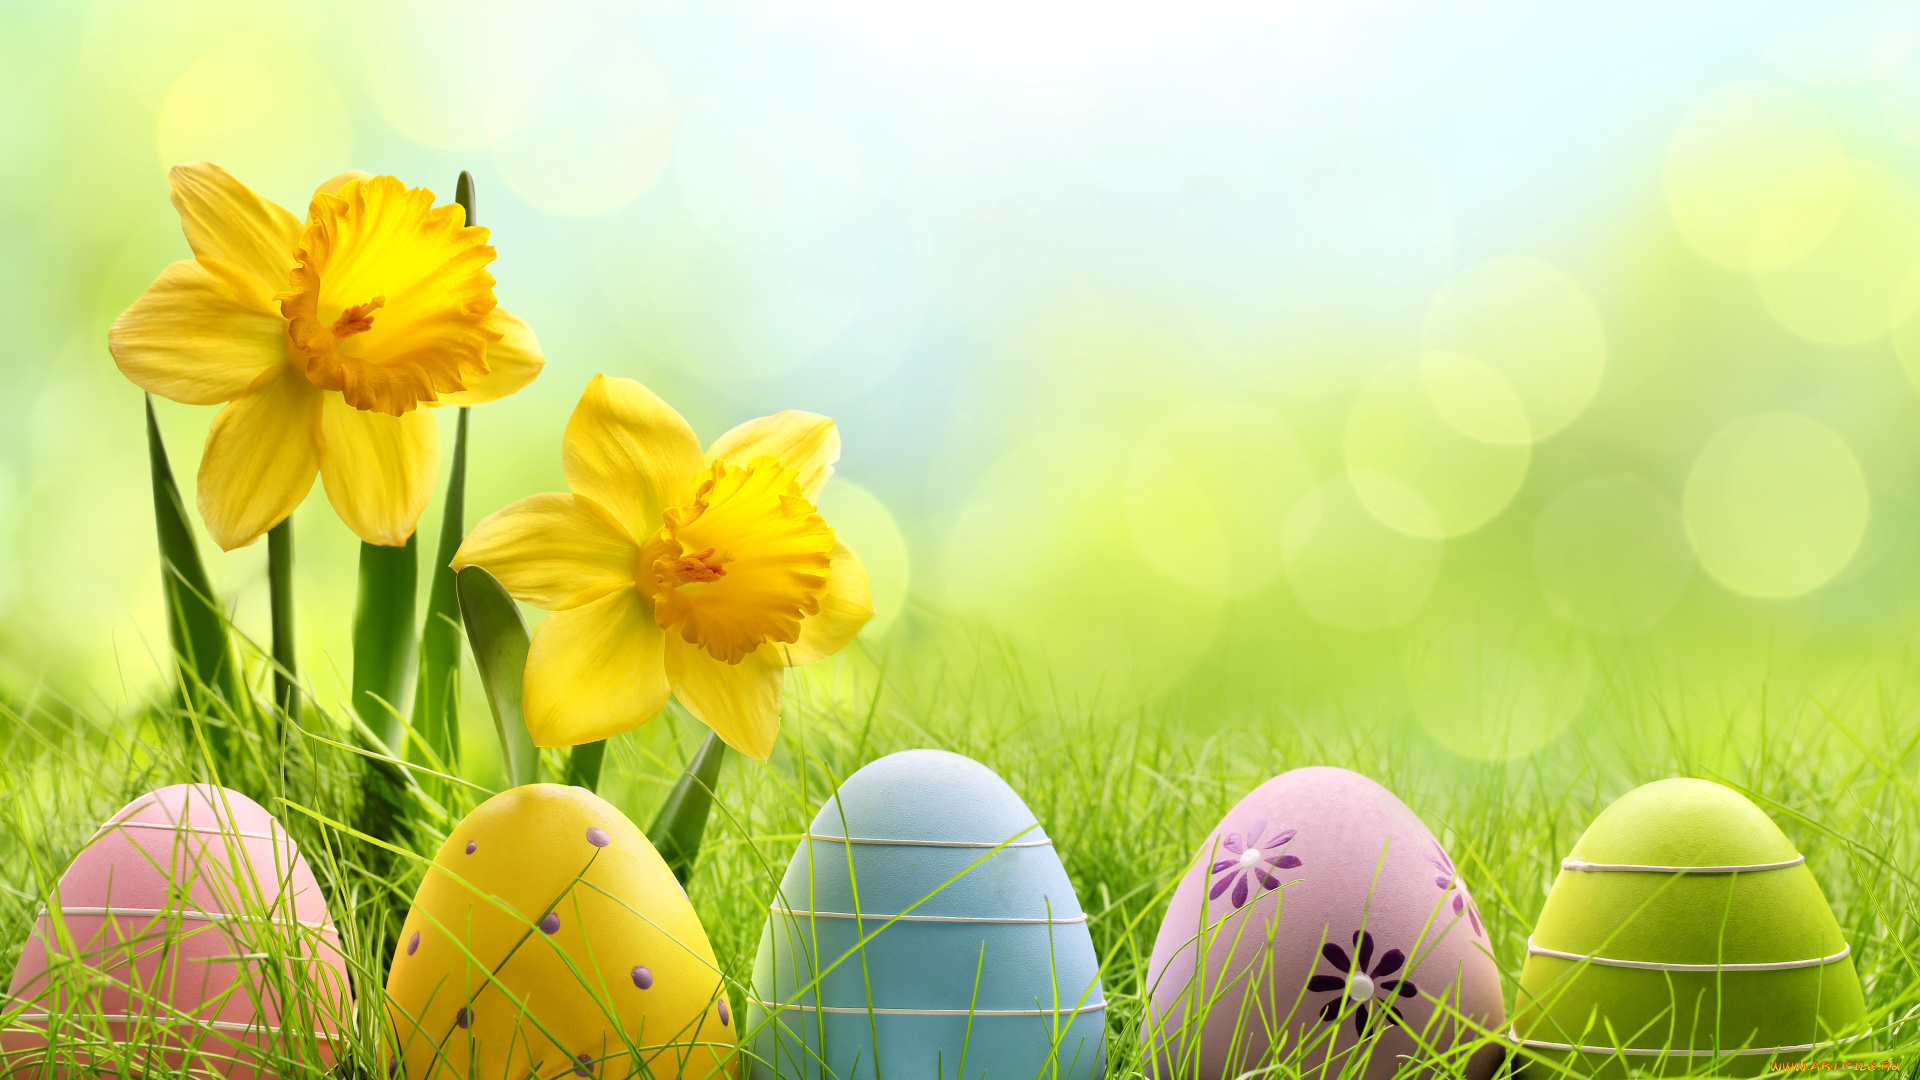 праздничные, пасха, easter, цветы, яйца, трава, meadow, grass, flowers, eggs, daffodils, весна, sunshine, spring, нарциссы, луг